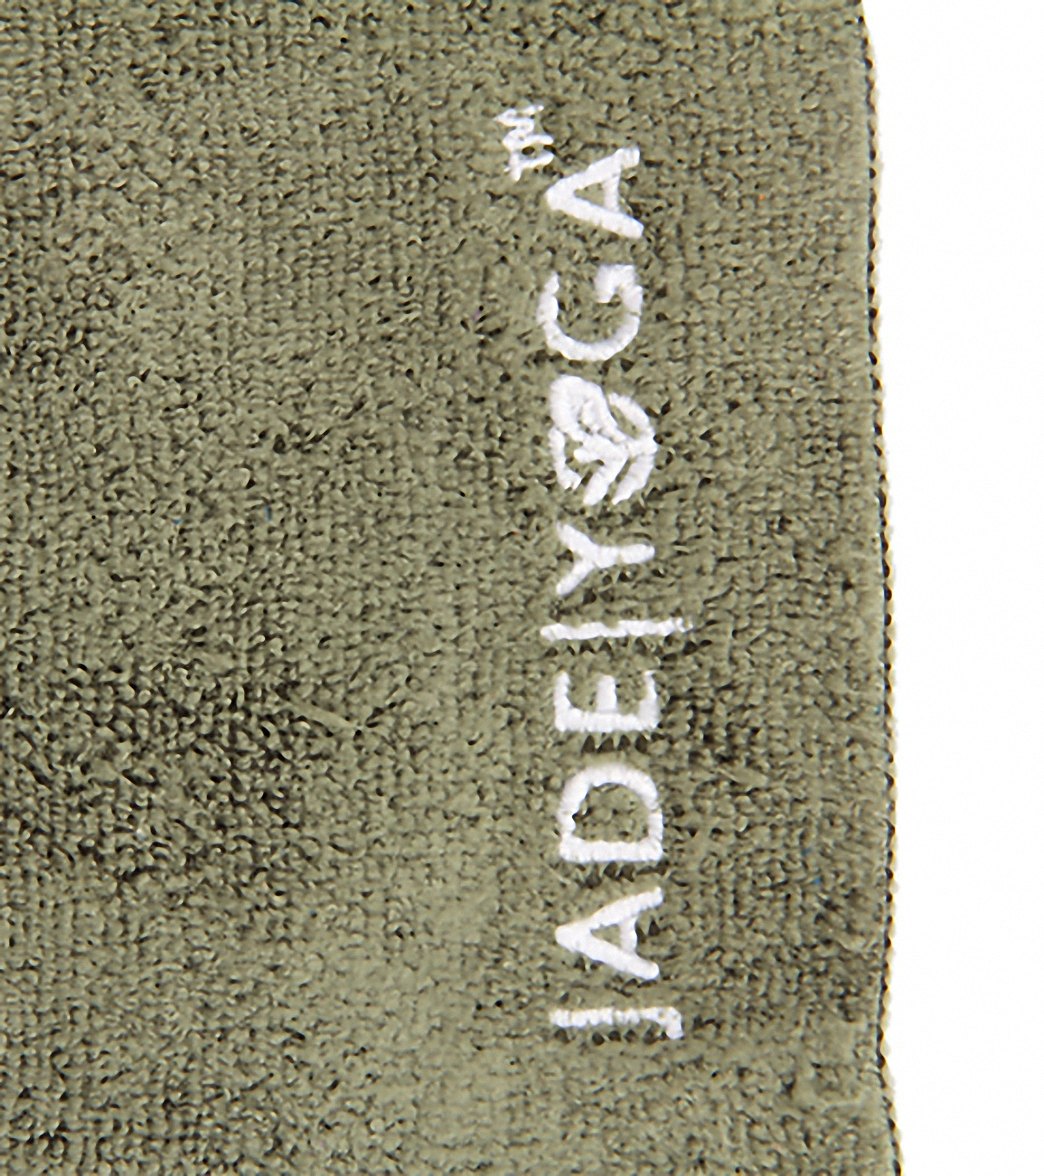 Jade Yoga Microfiber Yoga Mat Towel